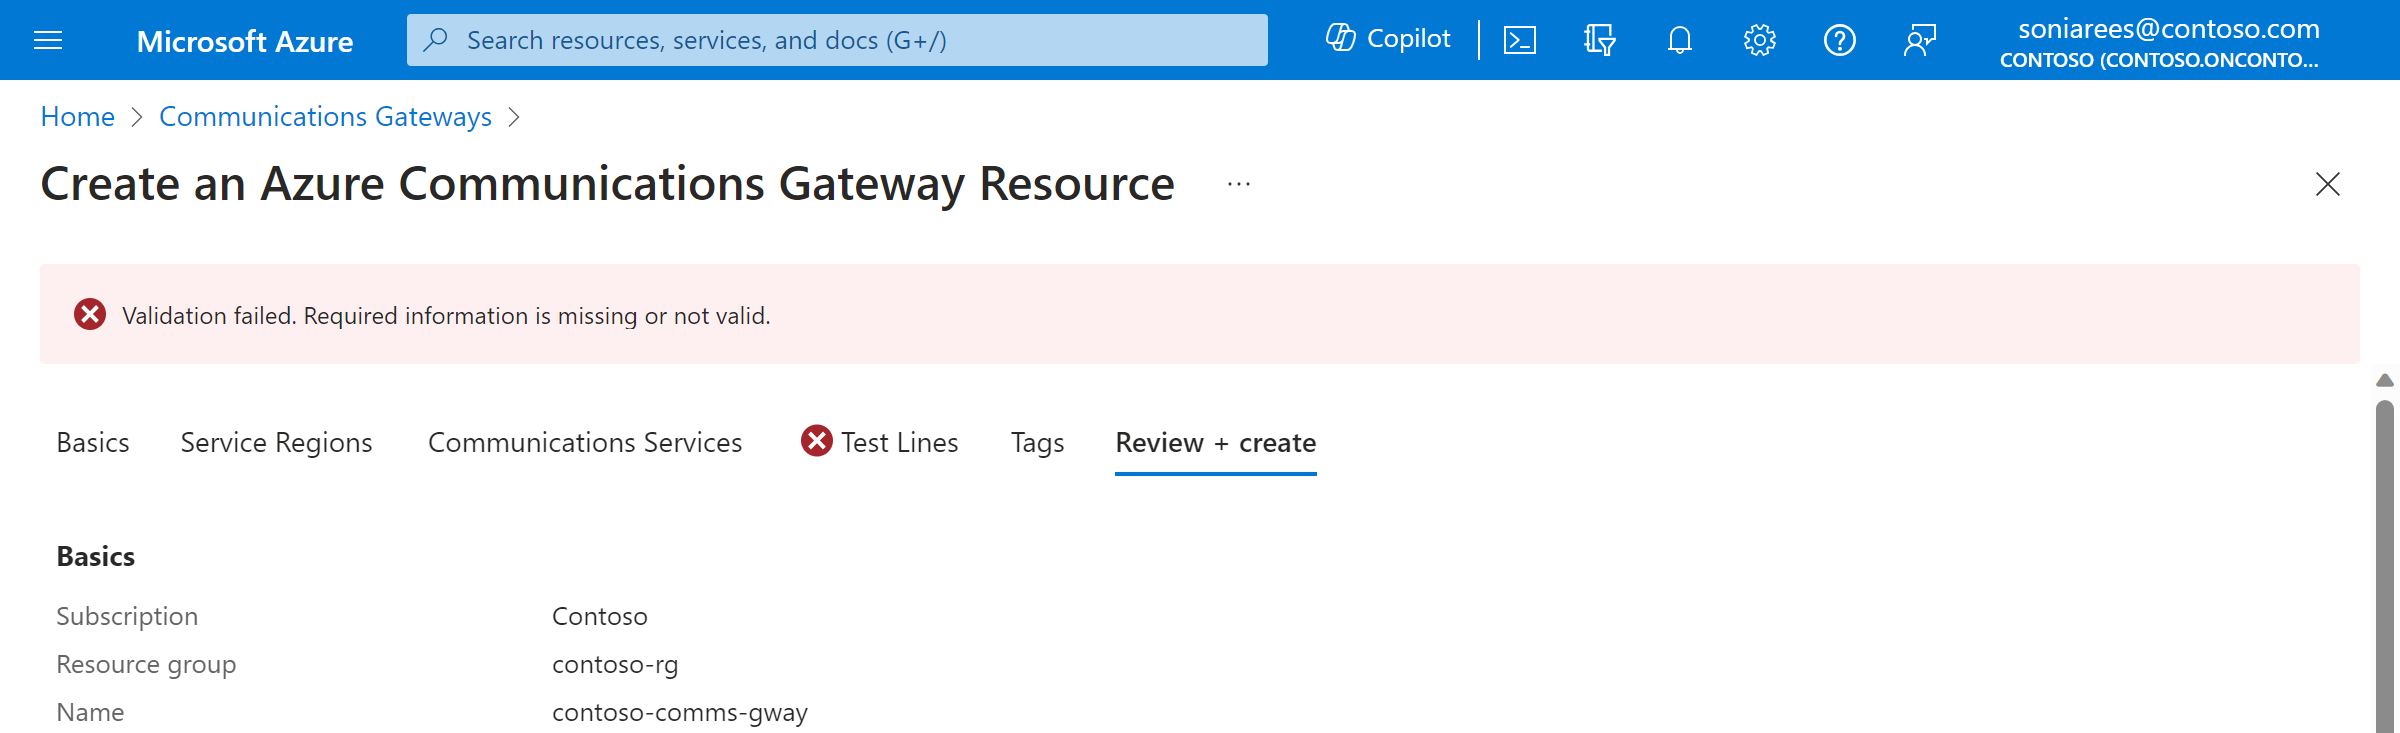 Zrzut ekranu przedstawiający portal Tworzenie bramy usługi Azure Communications Gateway z weryfikacją, która nie powiodła się z powodu braku informacji w sekcji Kontakty.